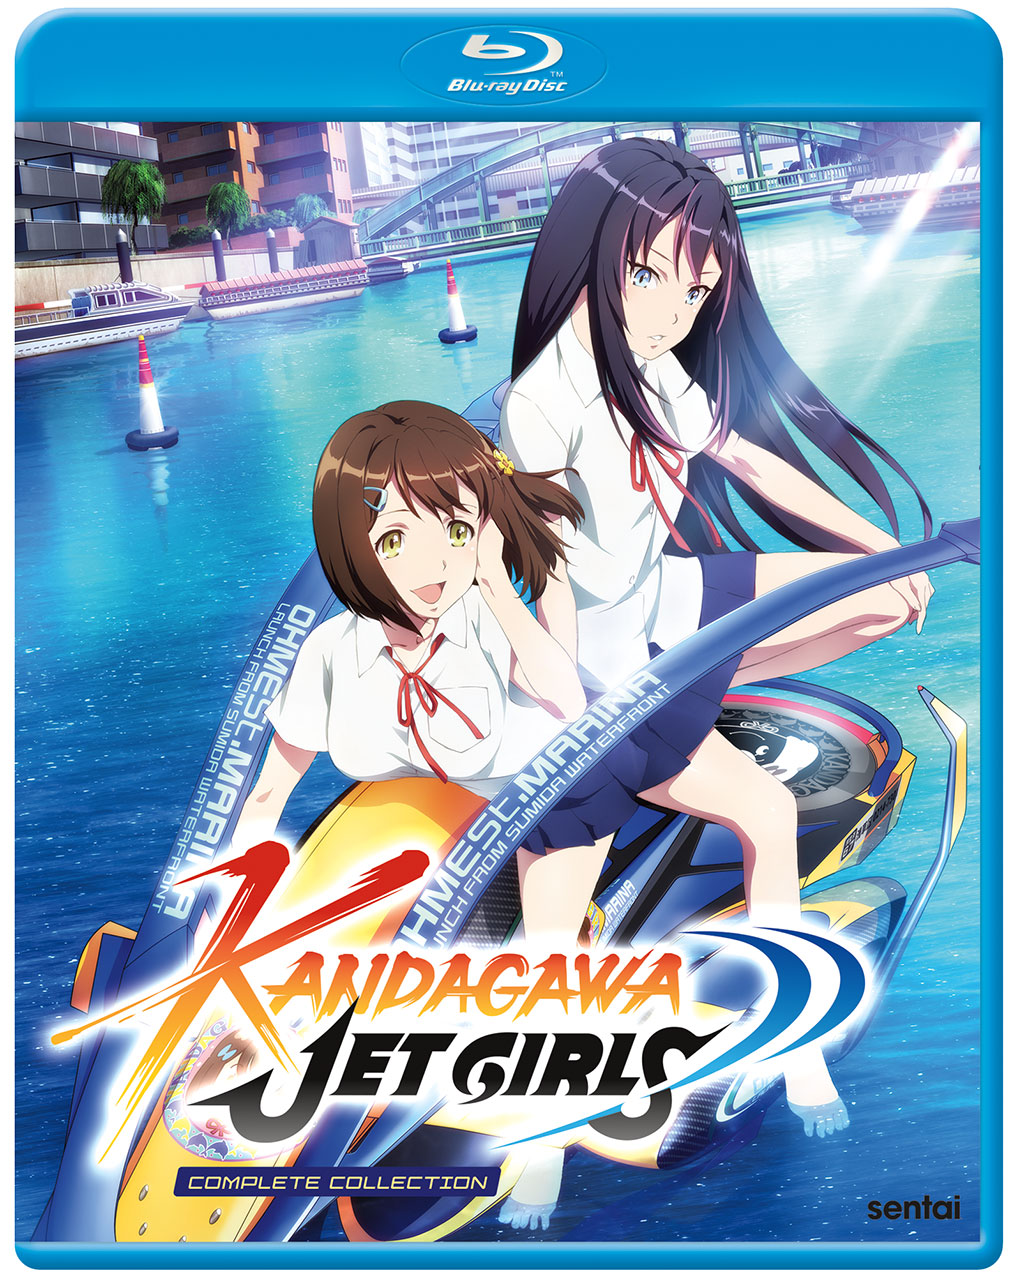 Kandgawa Jet Girls Anime Cover